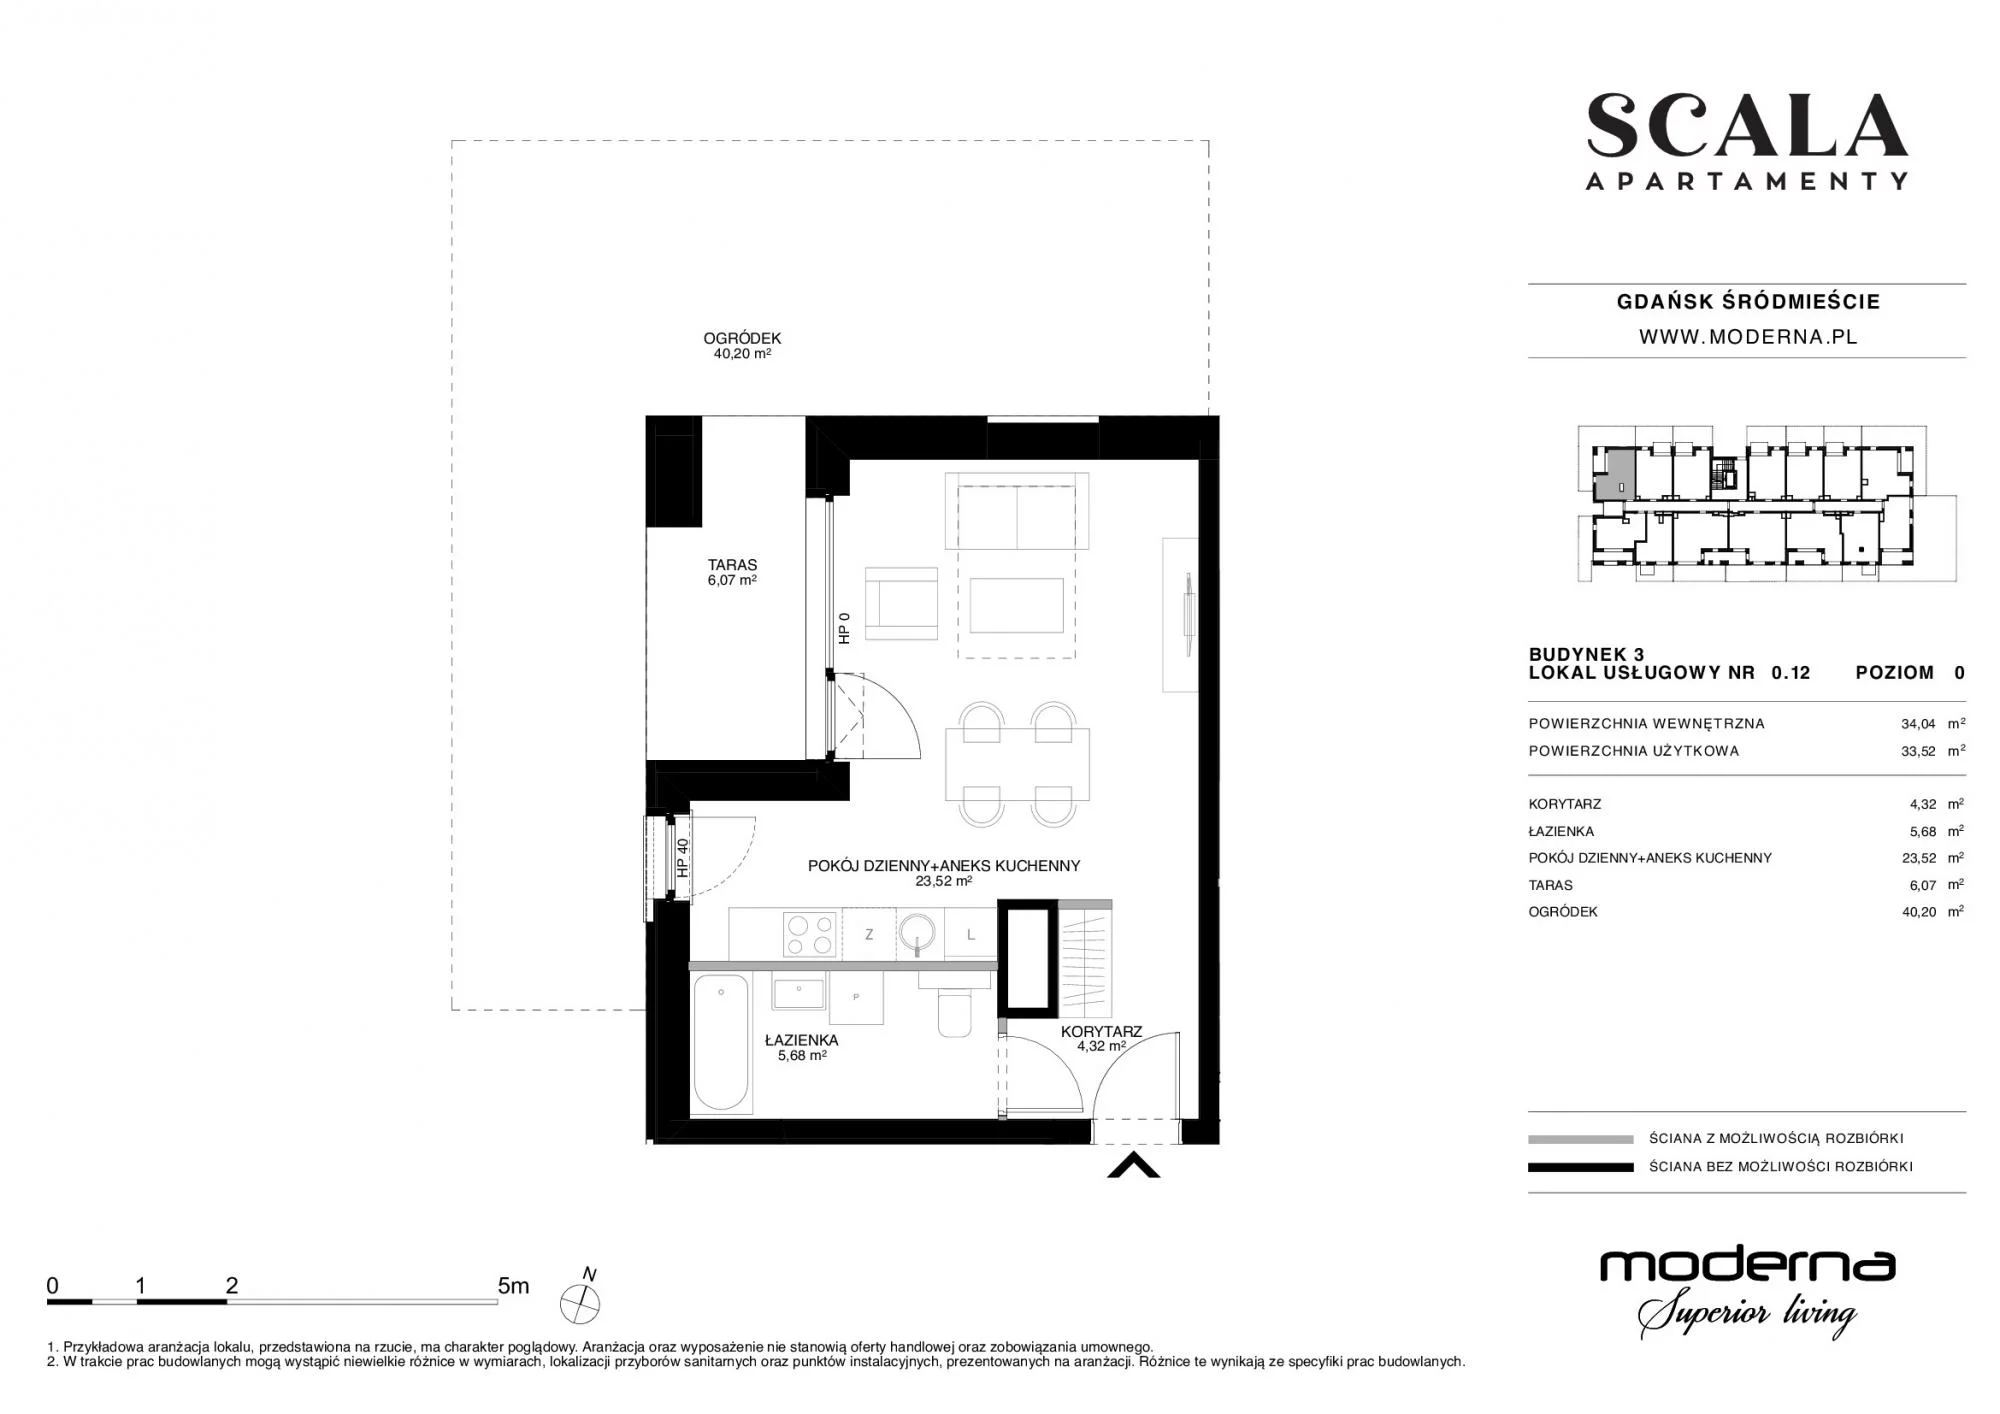 Apartament 33,77 m², parter, oferta nr 3-0.12., Scala, Gdańsk, Śródmieście, ul. Łąkowa 60C